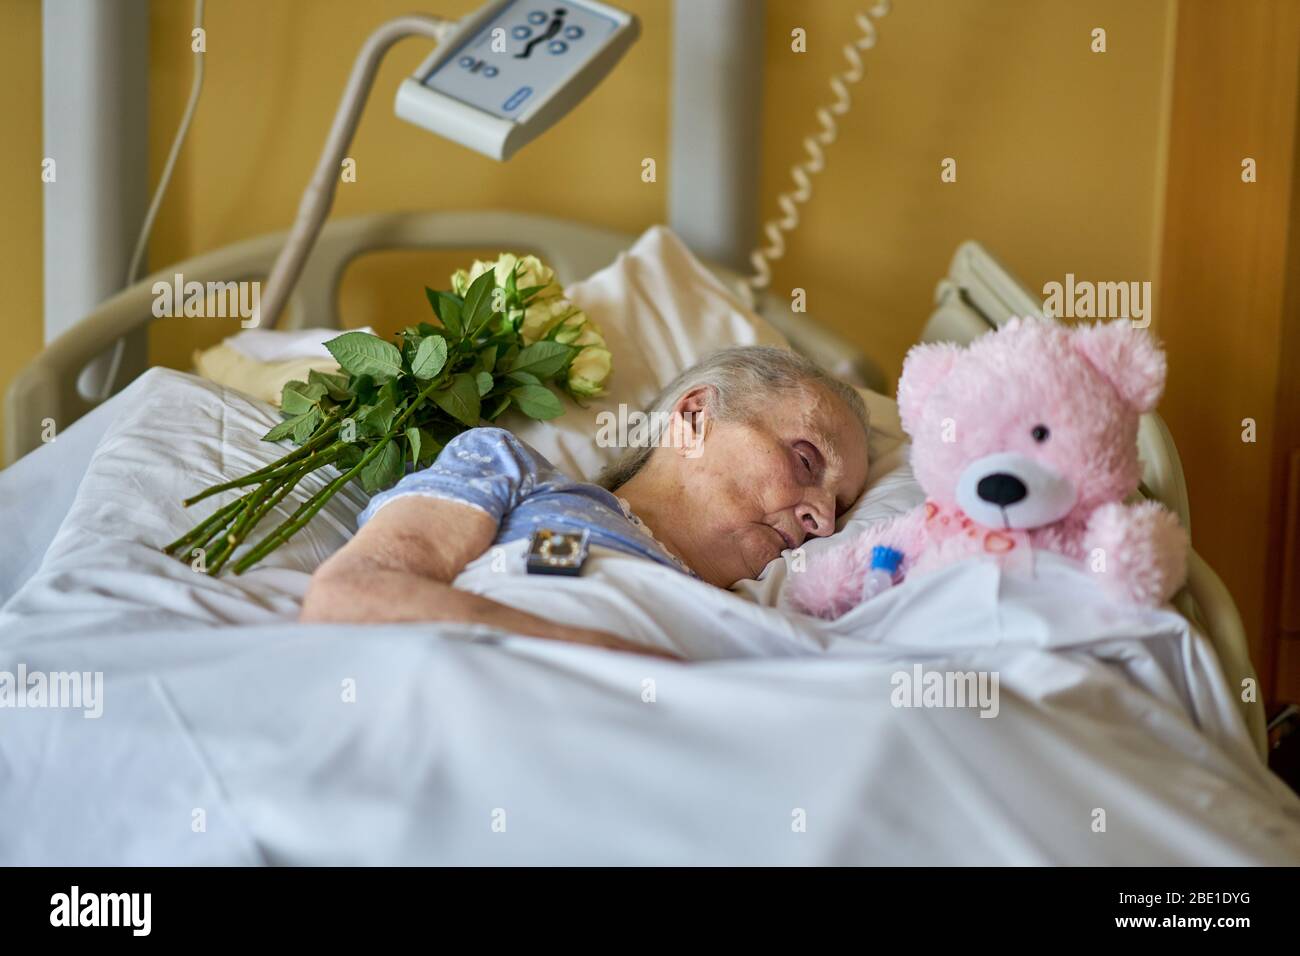 Eine Frau liegt sterbend in einem Krankenhausbett, umgeben von einem einäugigen Teddybär und gelben Rosen. Stockfoto